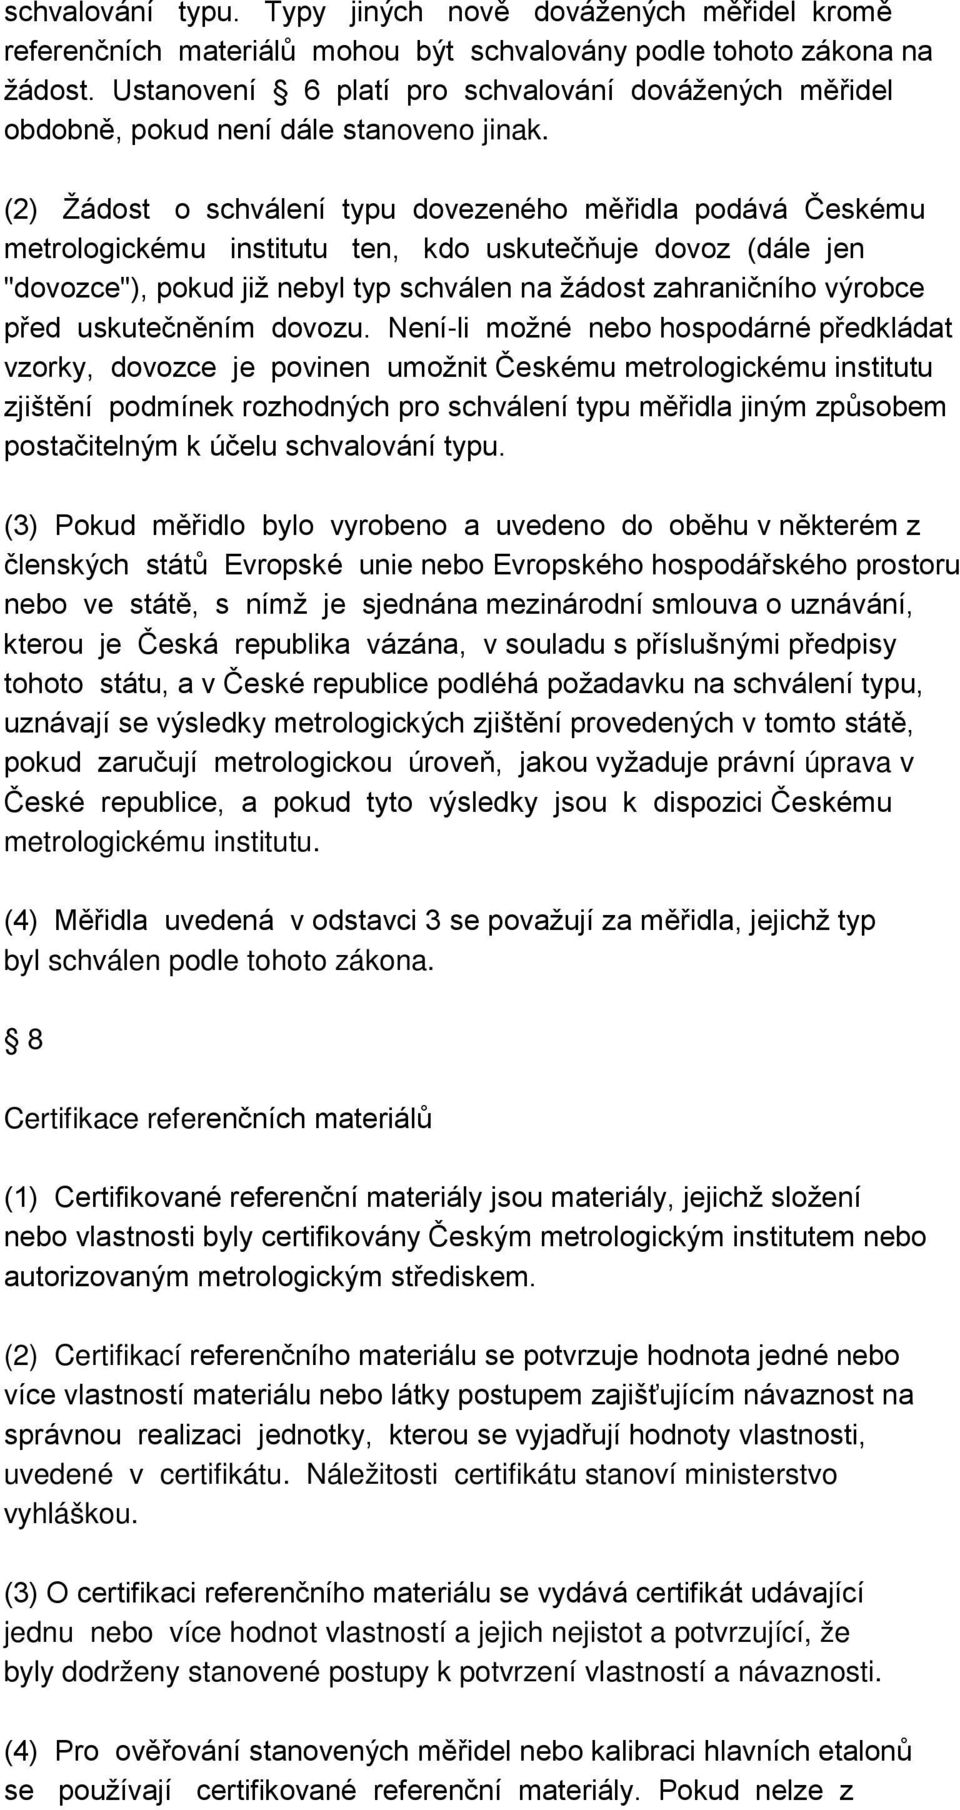 (2) Žádost o schválení typu dovezeného měřidla podává Českému metrologickému institutu ten, kdo uskutečňuje dovoz (dále jen "dovozce"), pokud již nebyl typ schválen na žádost zahraničního výrobce